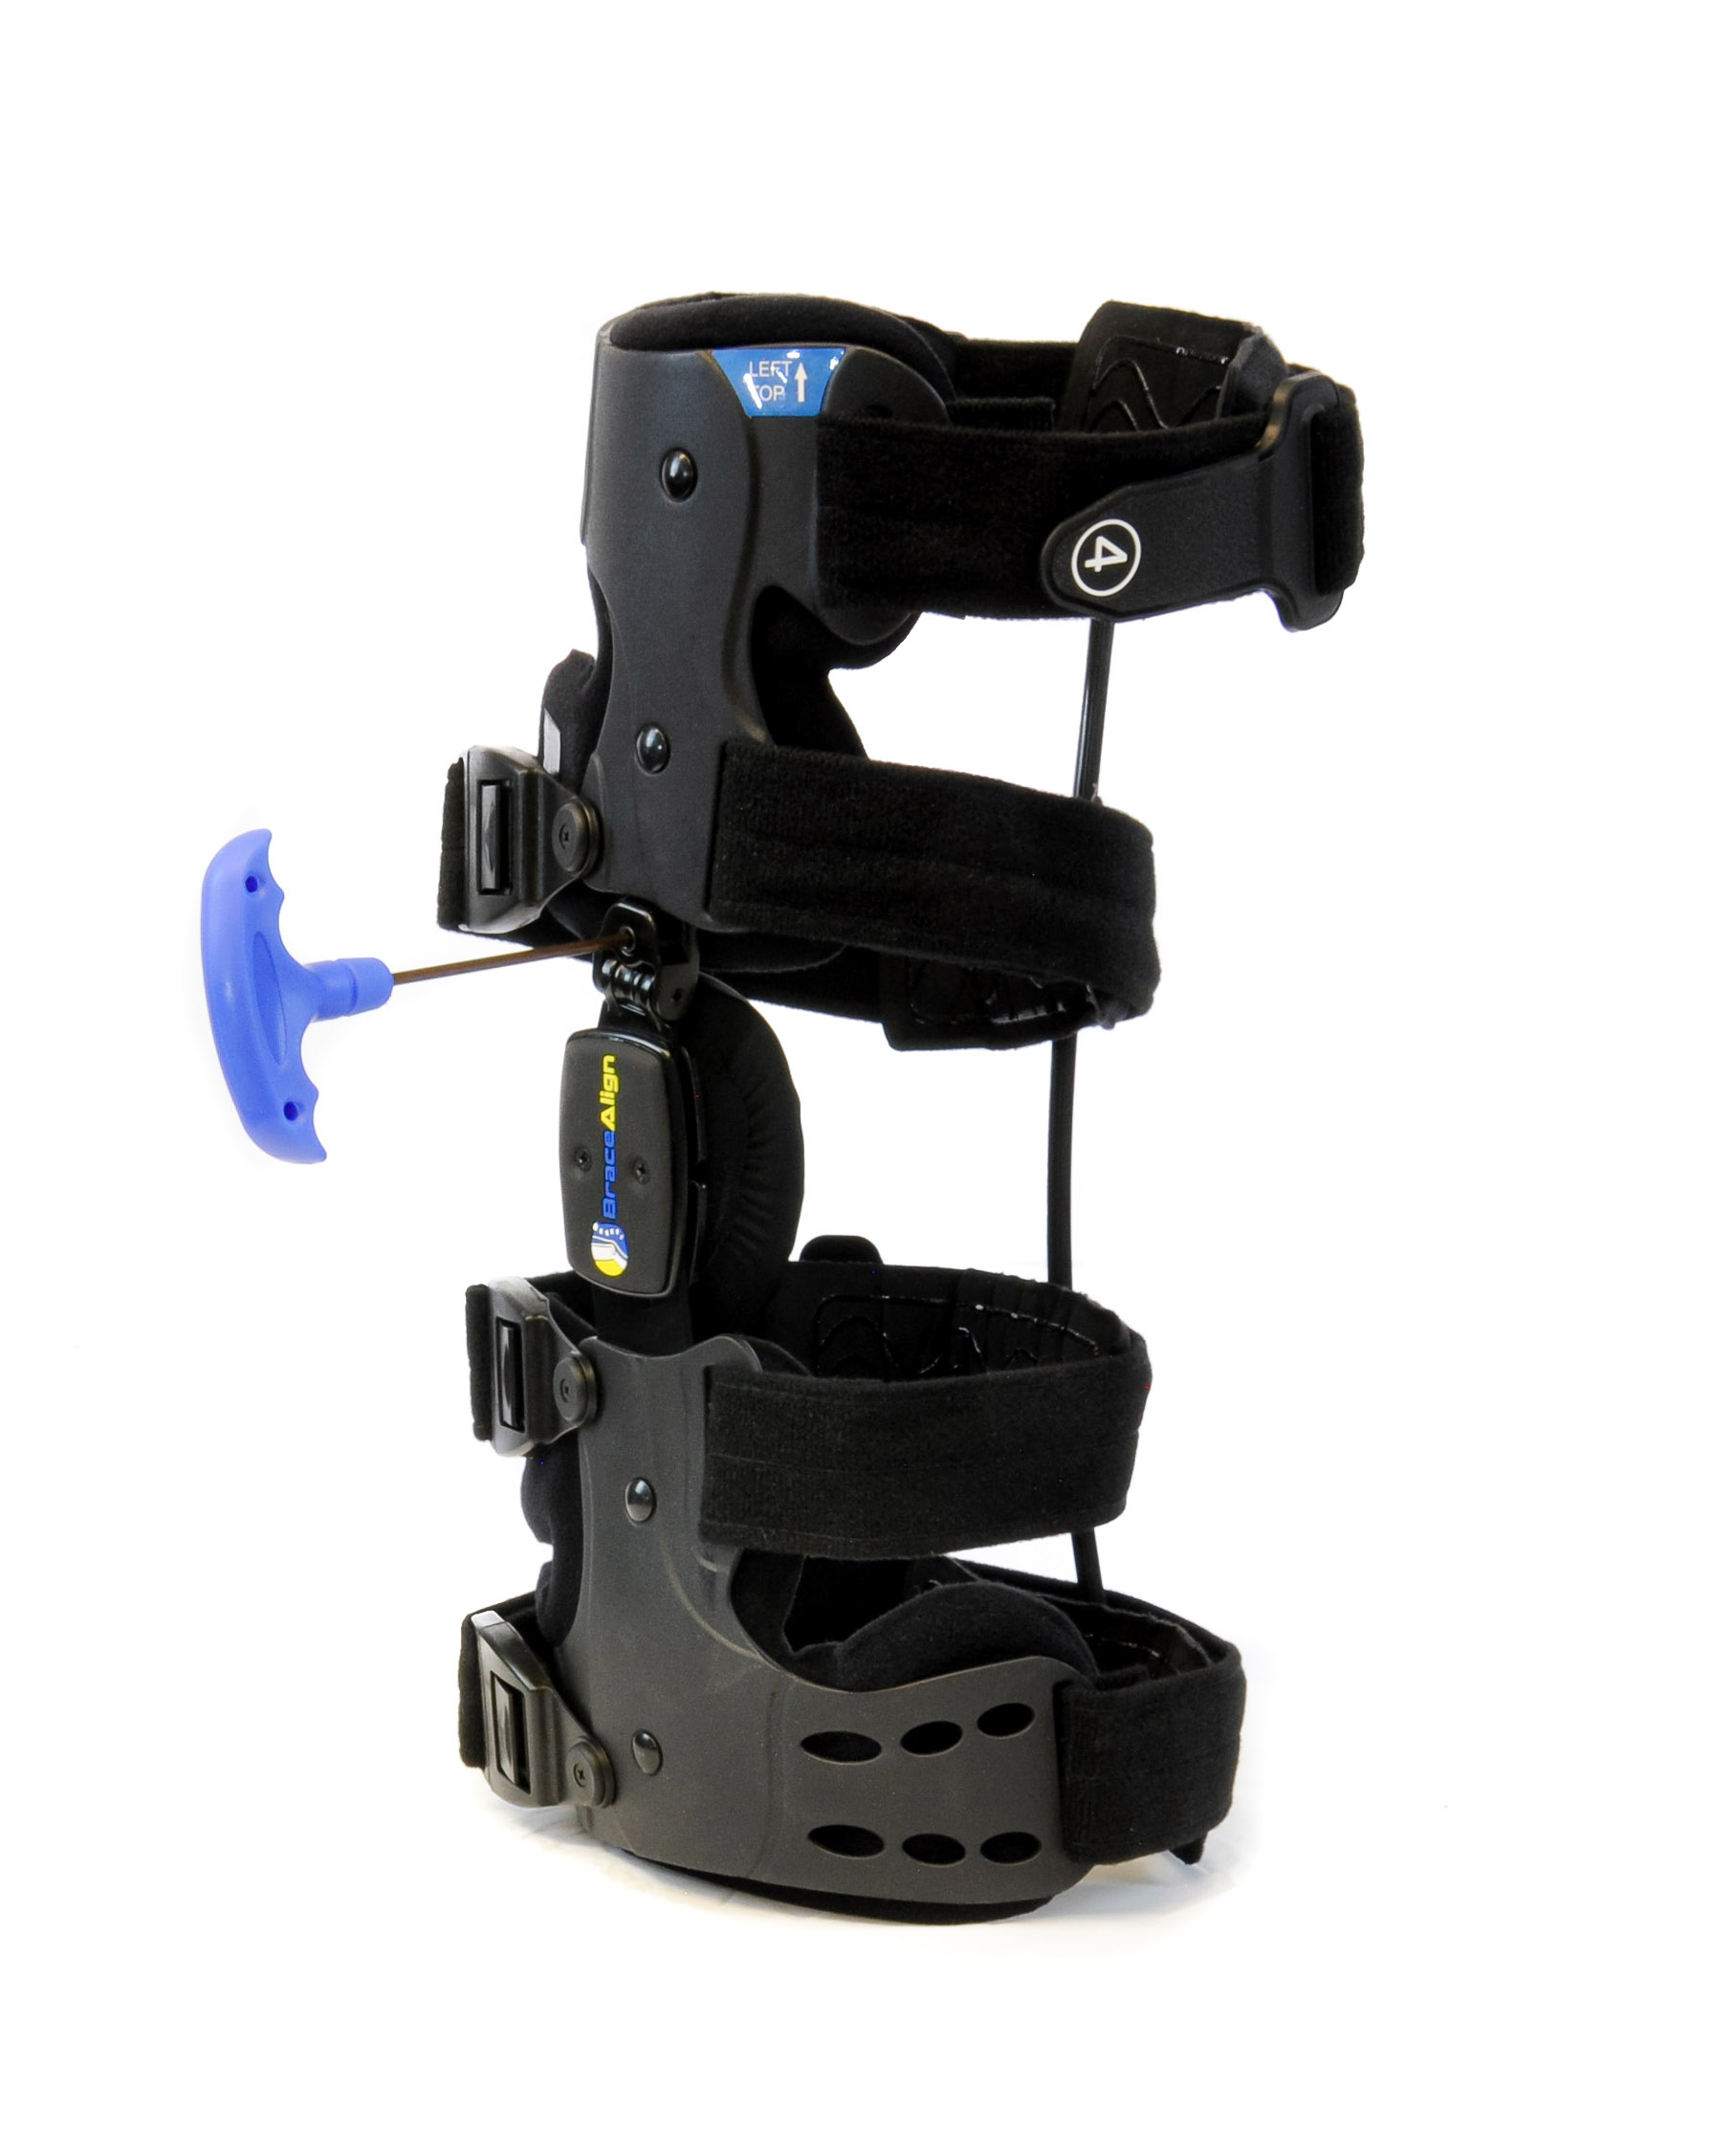 Brace Align KOAlign Plus Size Knee Brace for Osteoarthritis Wrap PDAC  L1843/L1851